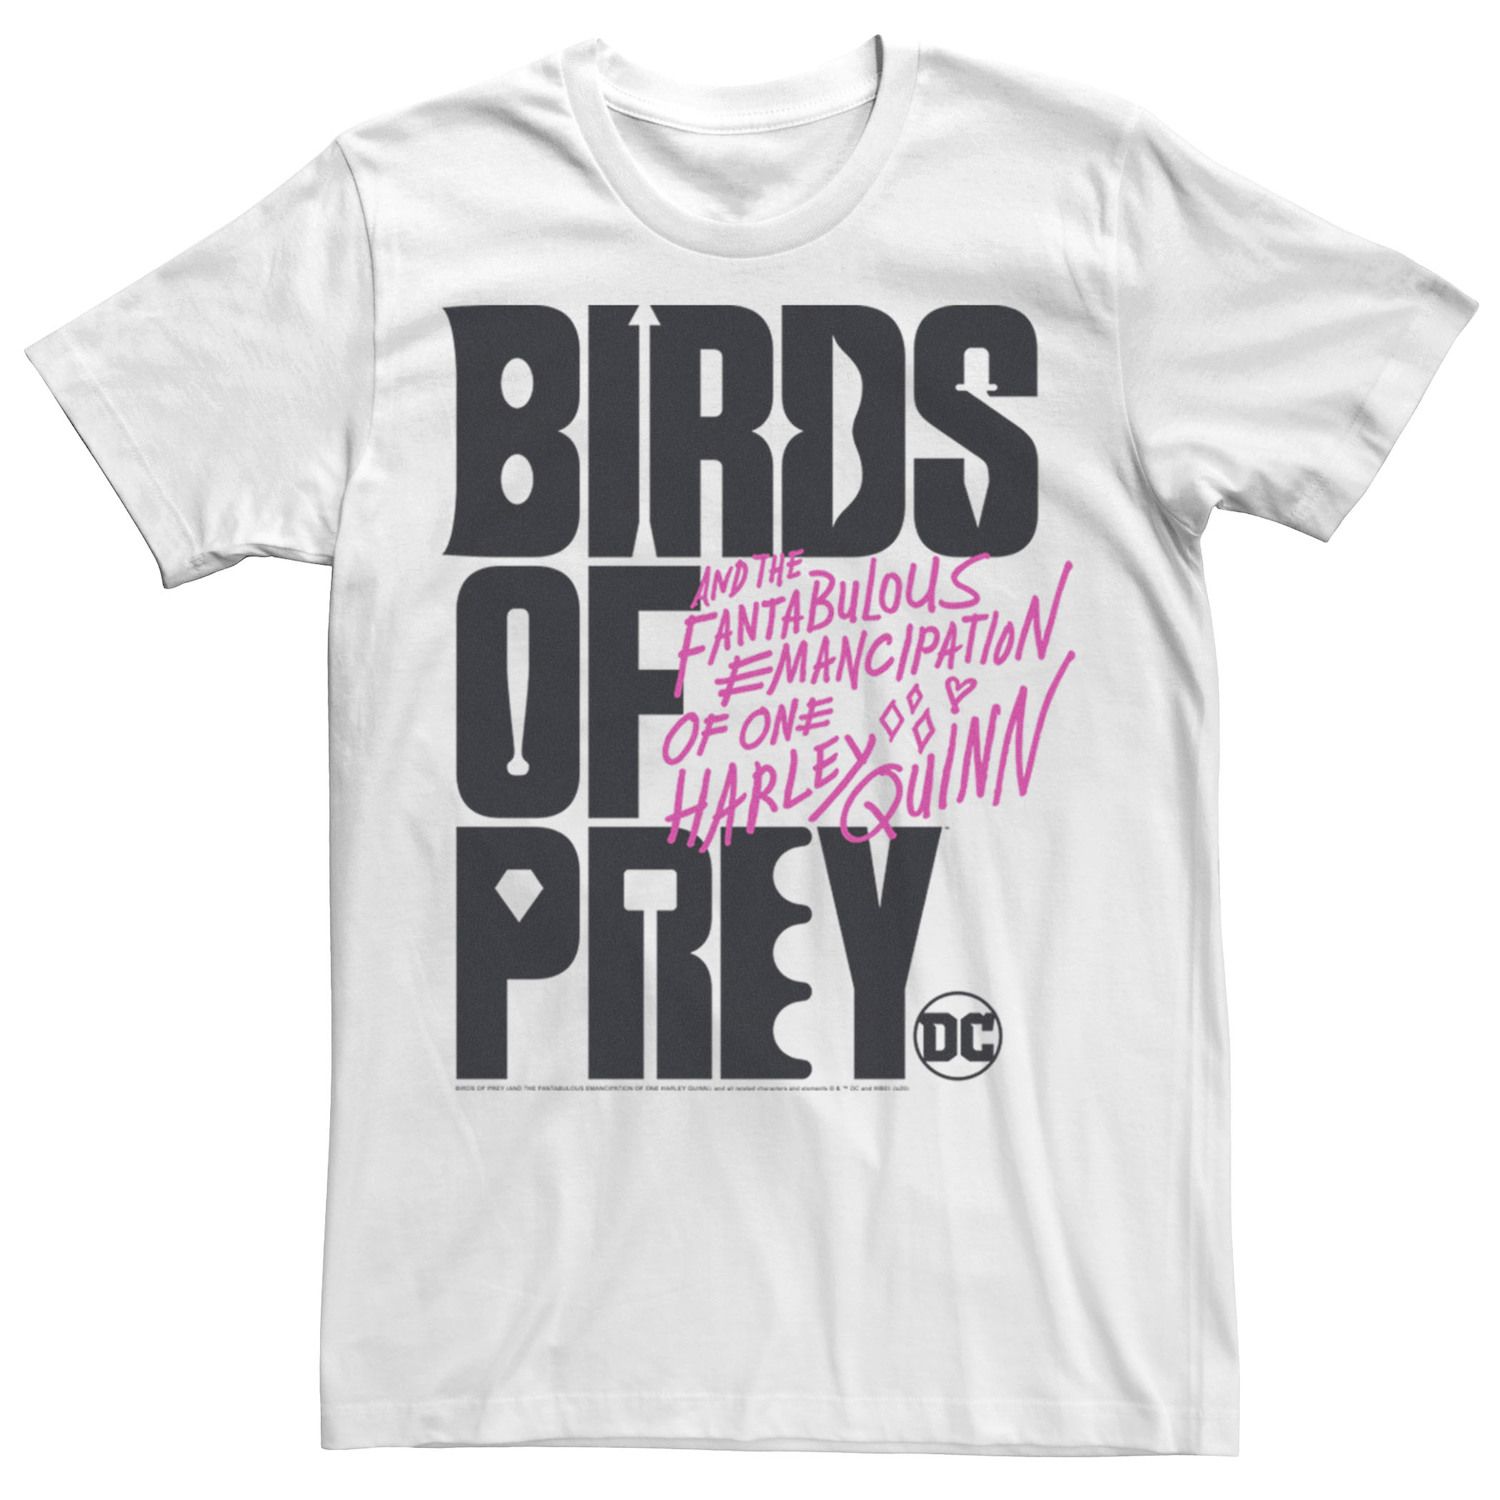 Мужская футболка с текстовым логотипом «Хищные птицы» DC Comics приор групп наклейка патч для одежды dc хищные птицы – 1